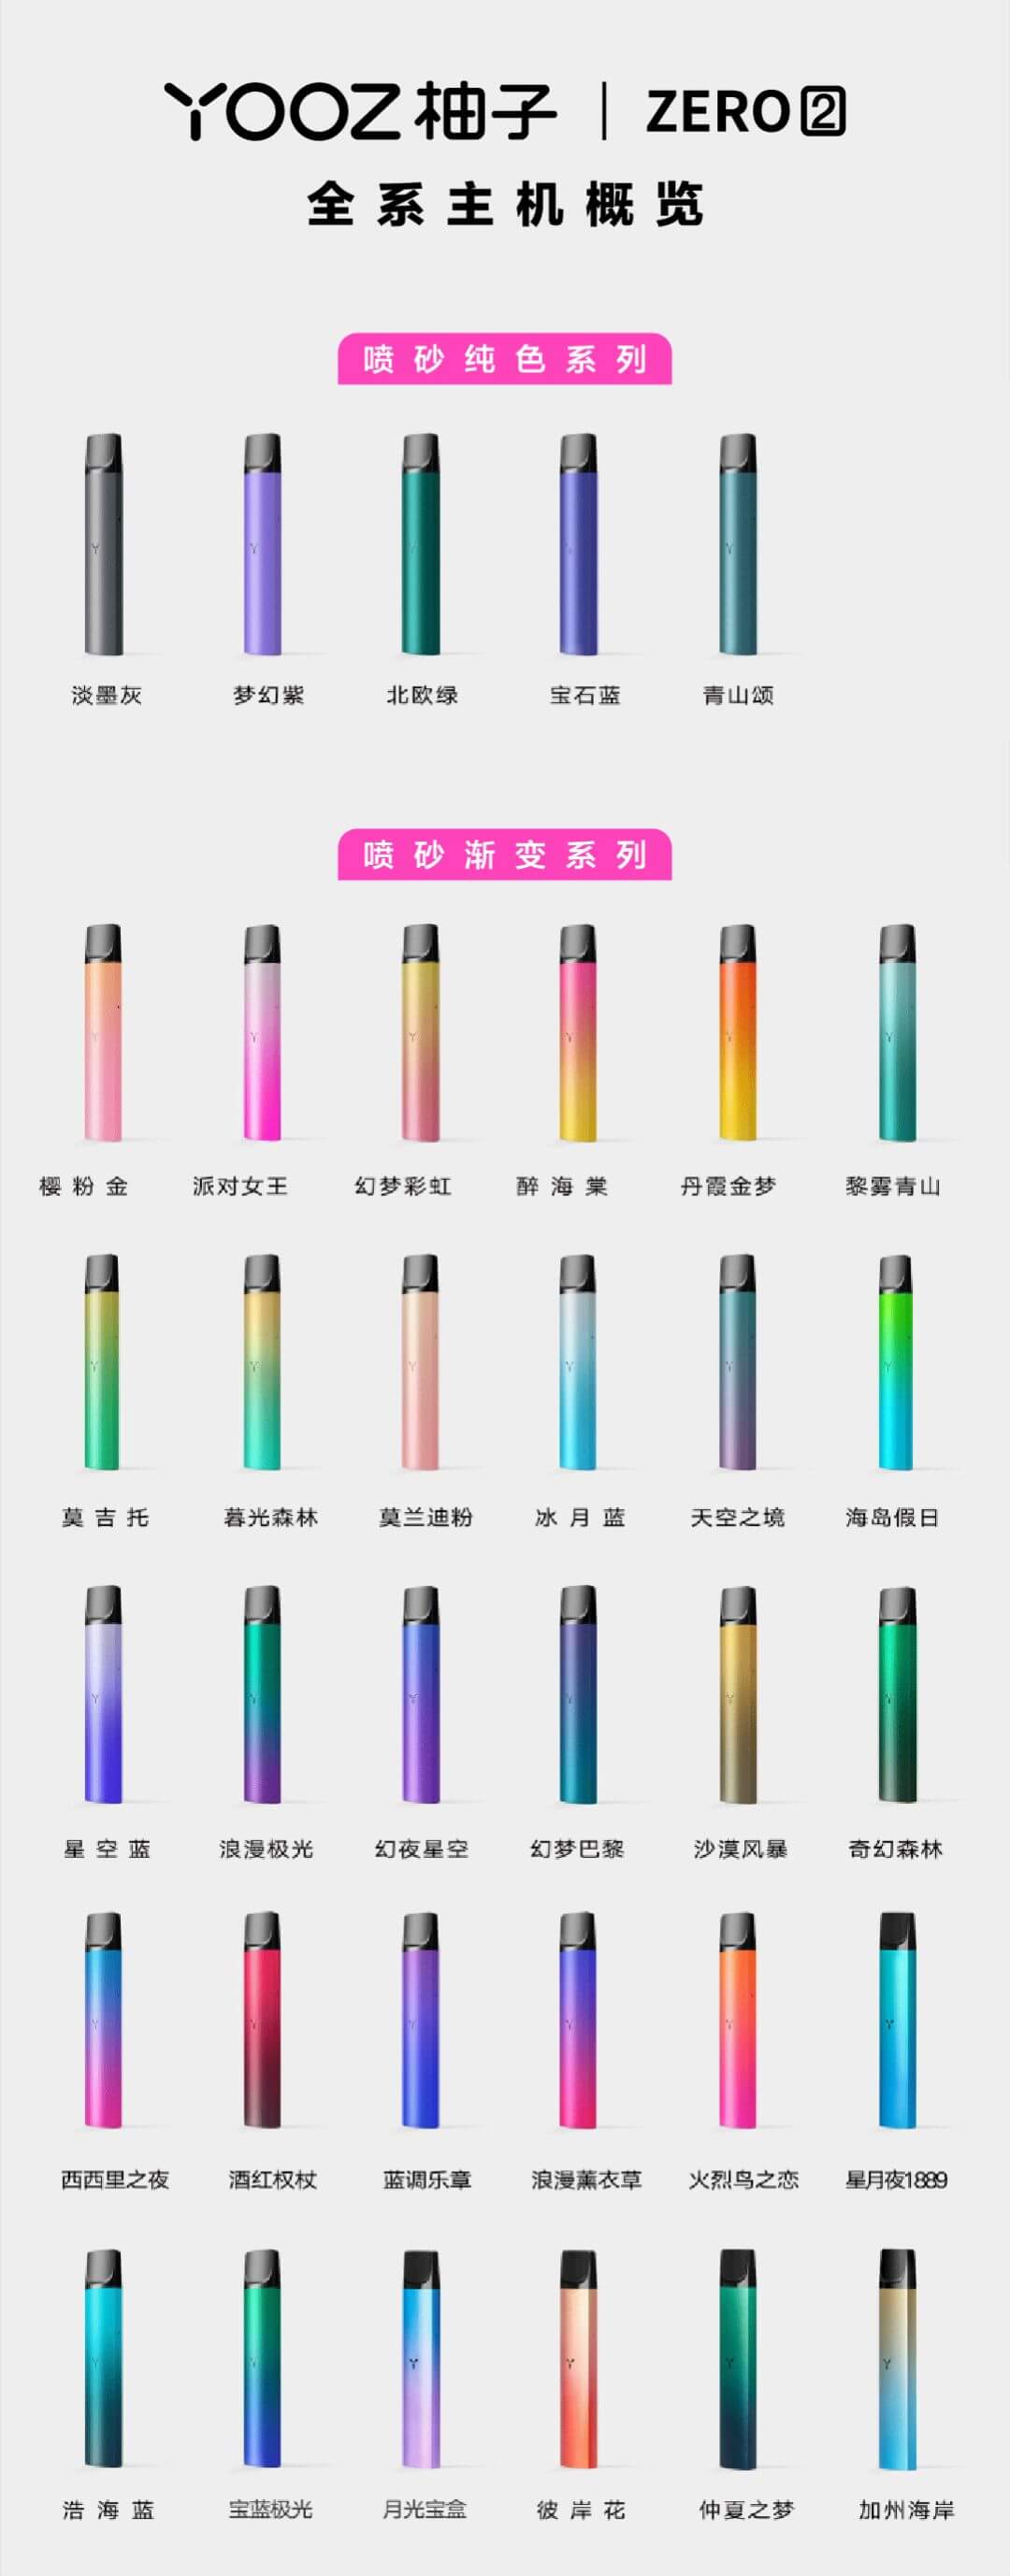 yooz柚子二代最新全系列烟杆列表-2021-10 - 第1张